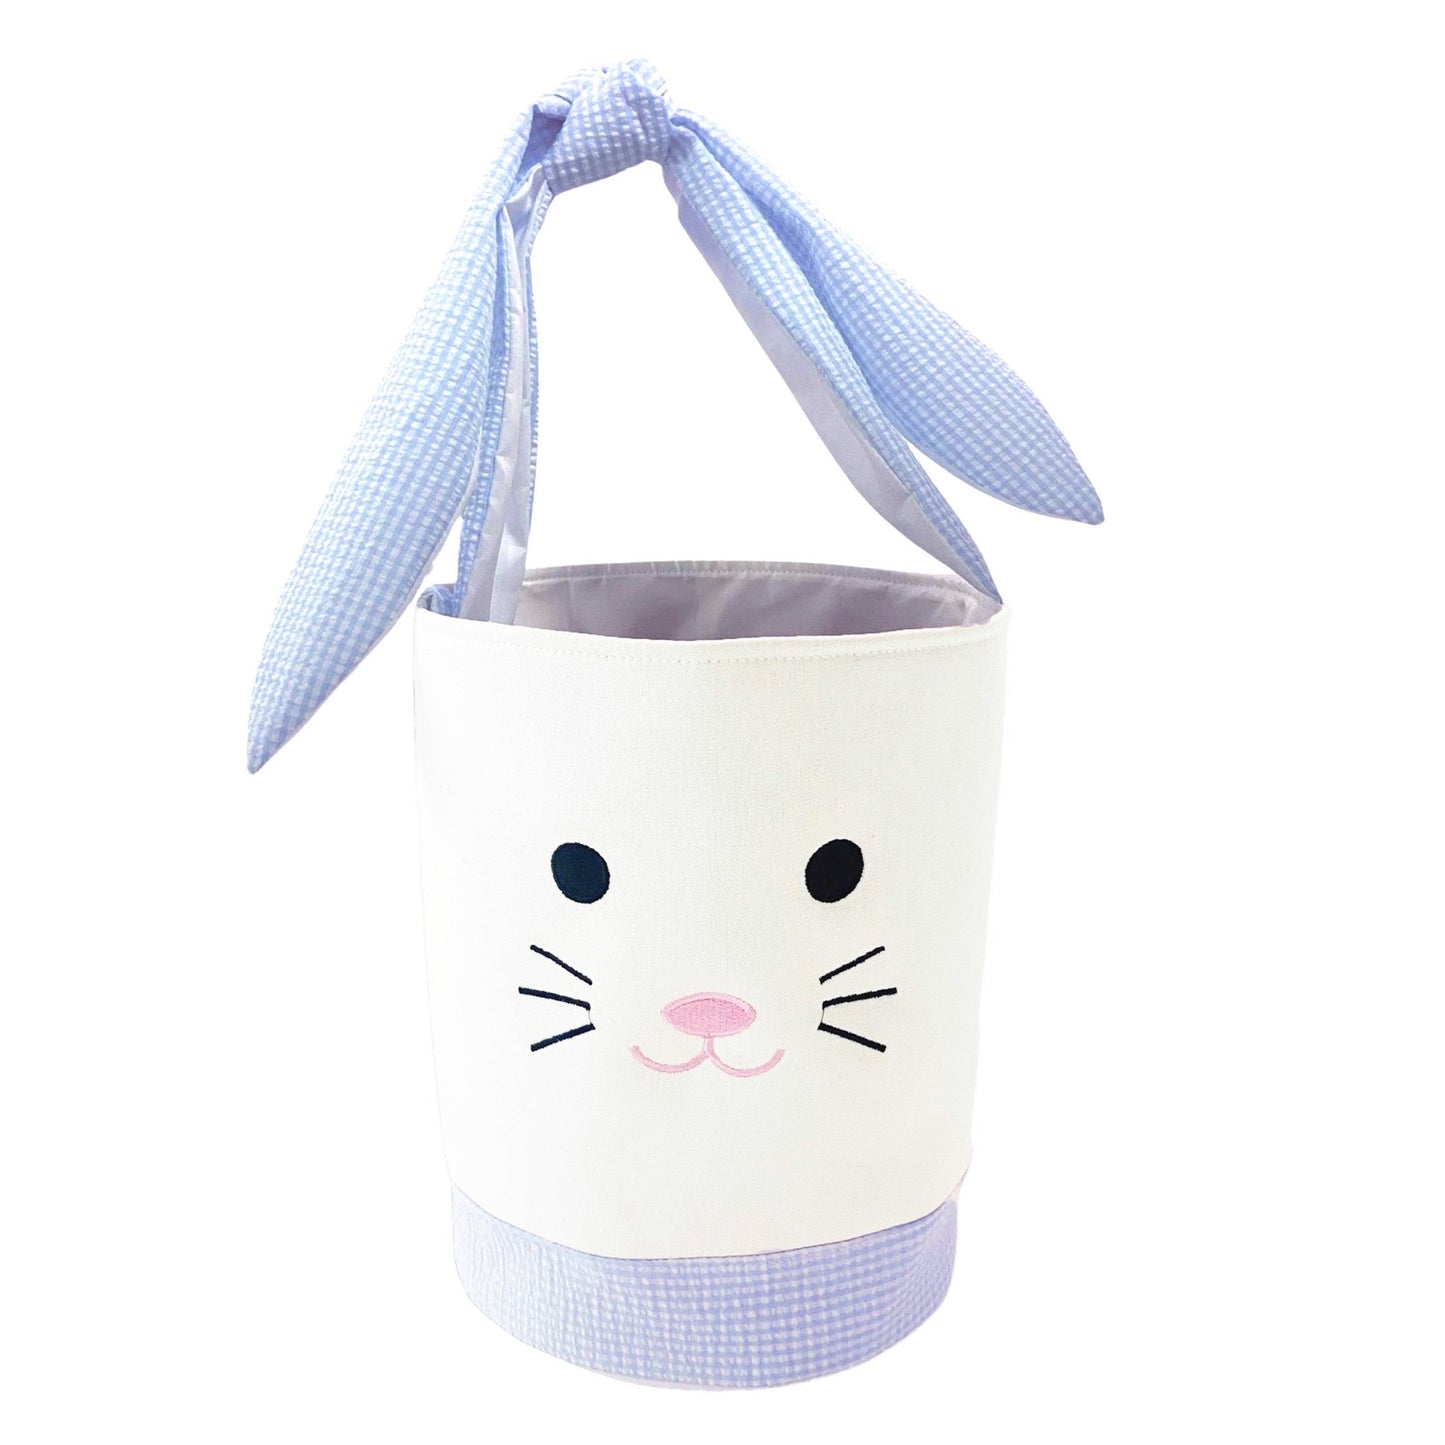 Bunny Easter Basket - Blue